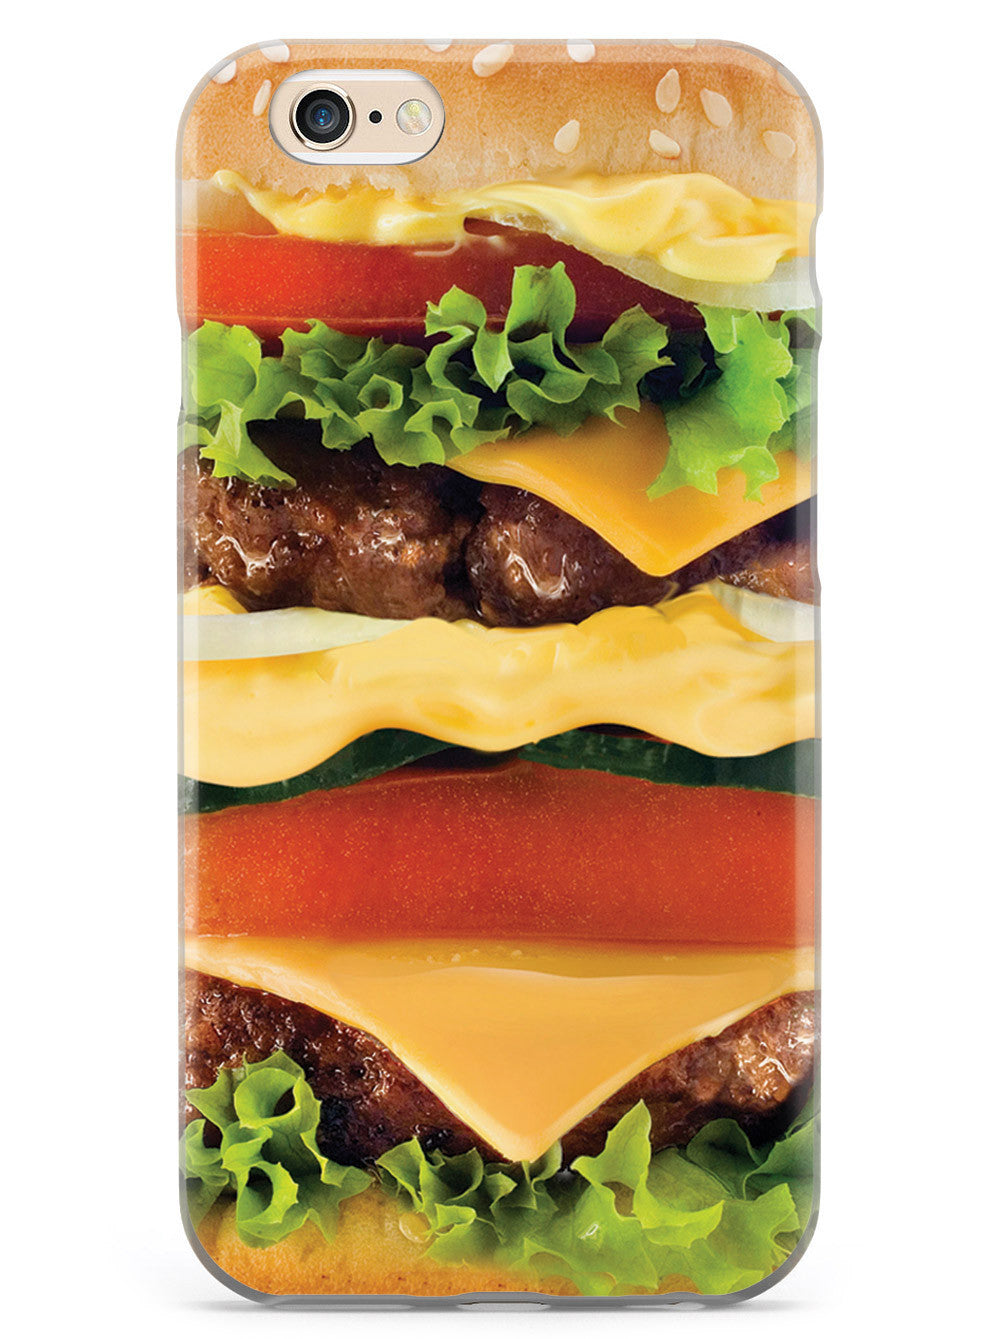 Cheeseburger Case